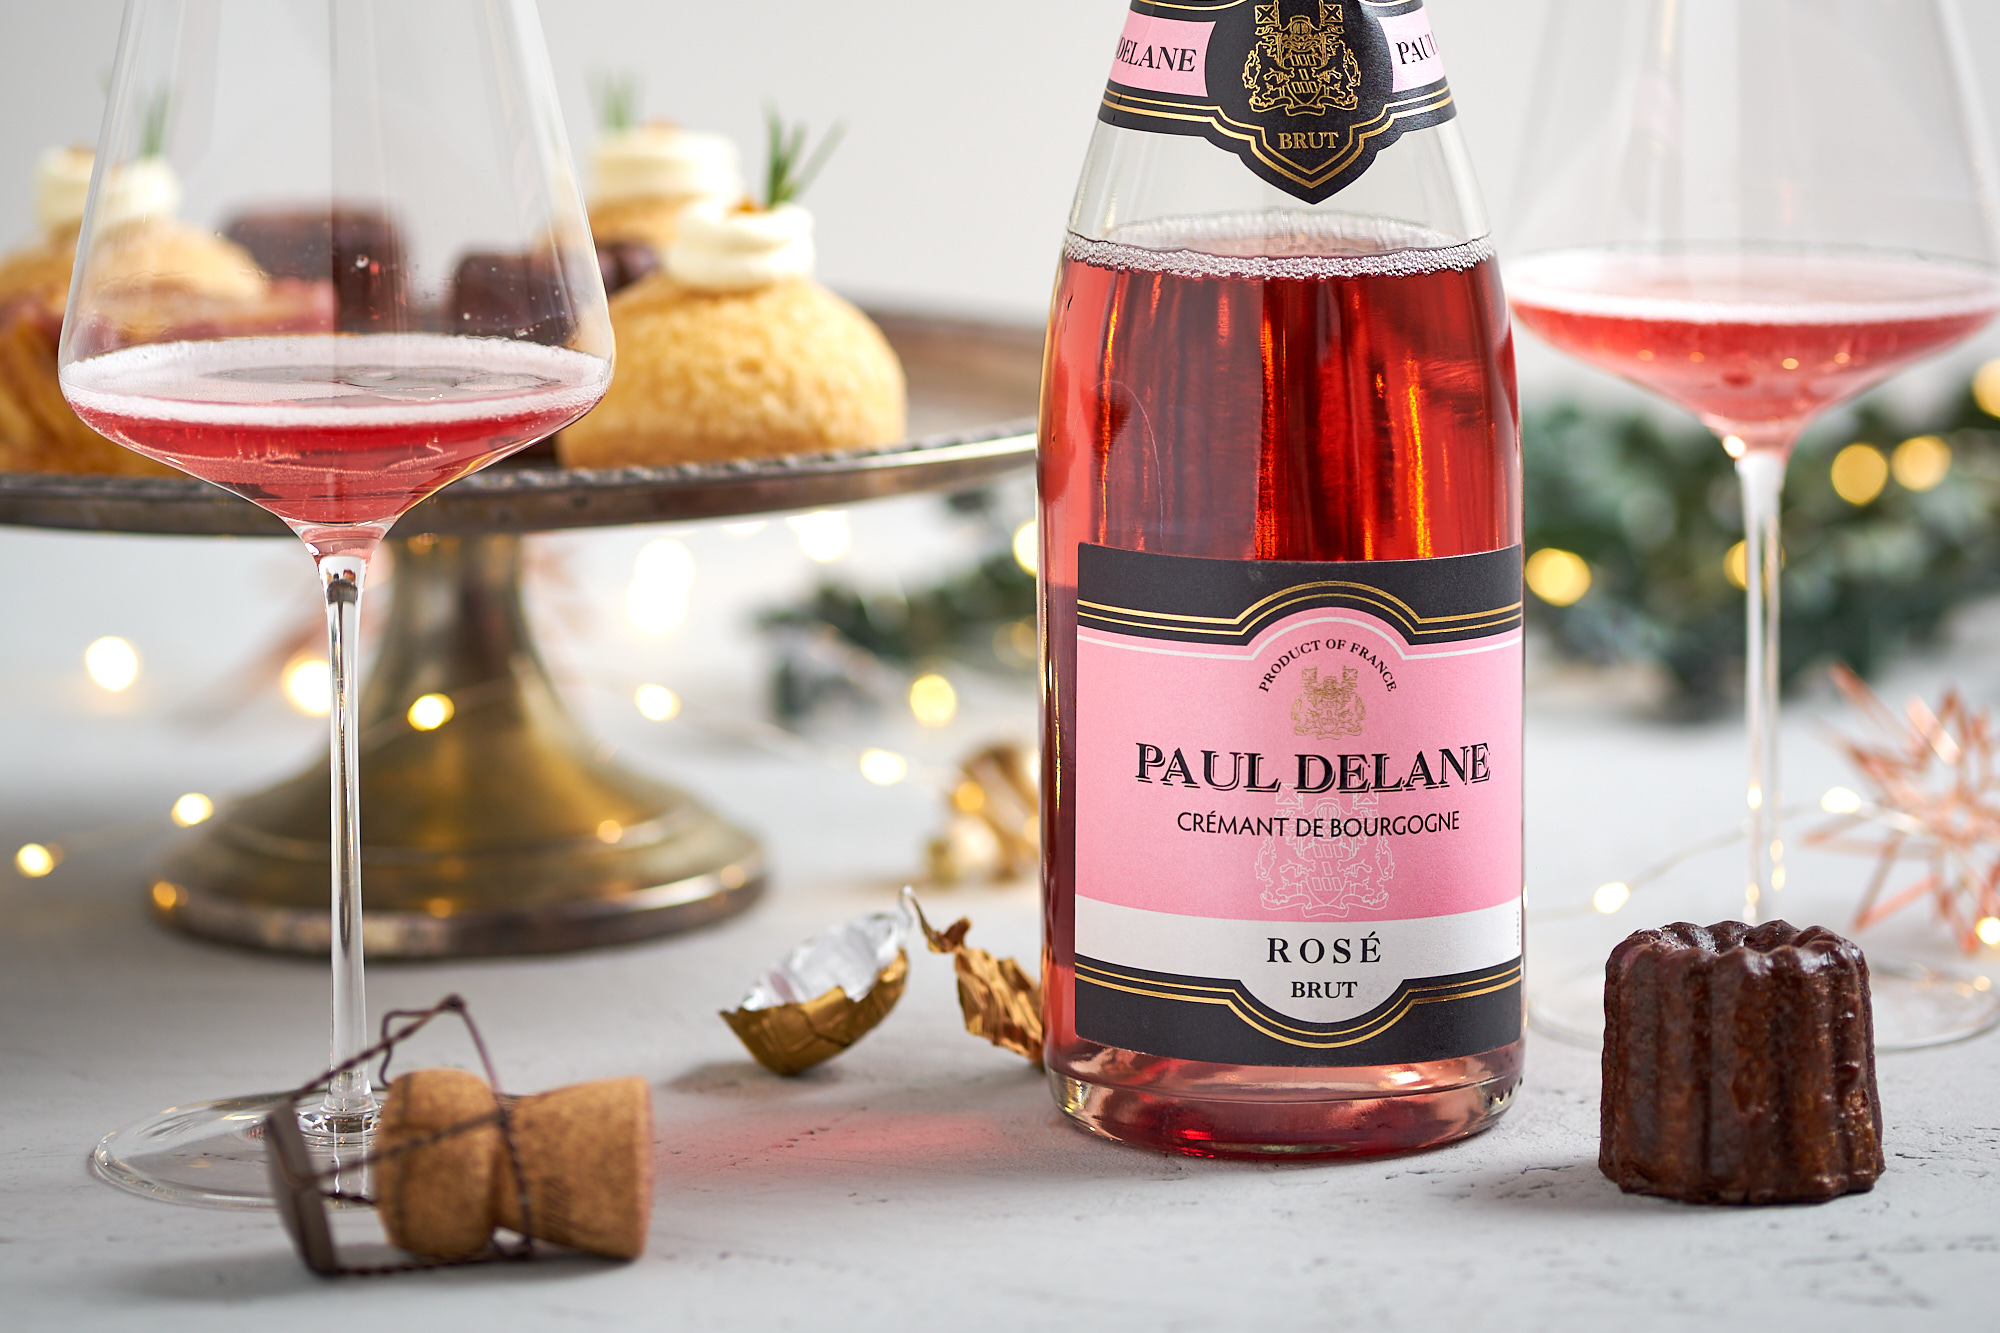 Paul Delane "Rosé" Cremant de Bourgogne brut